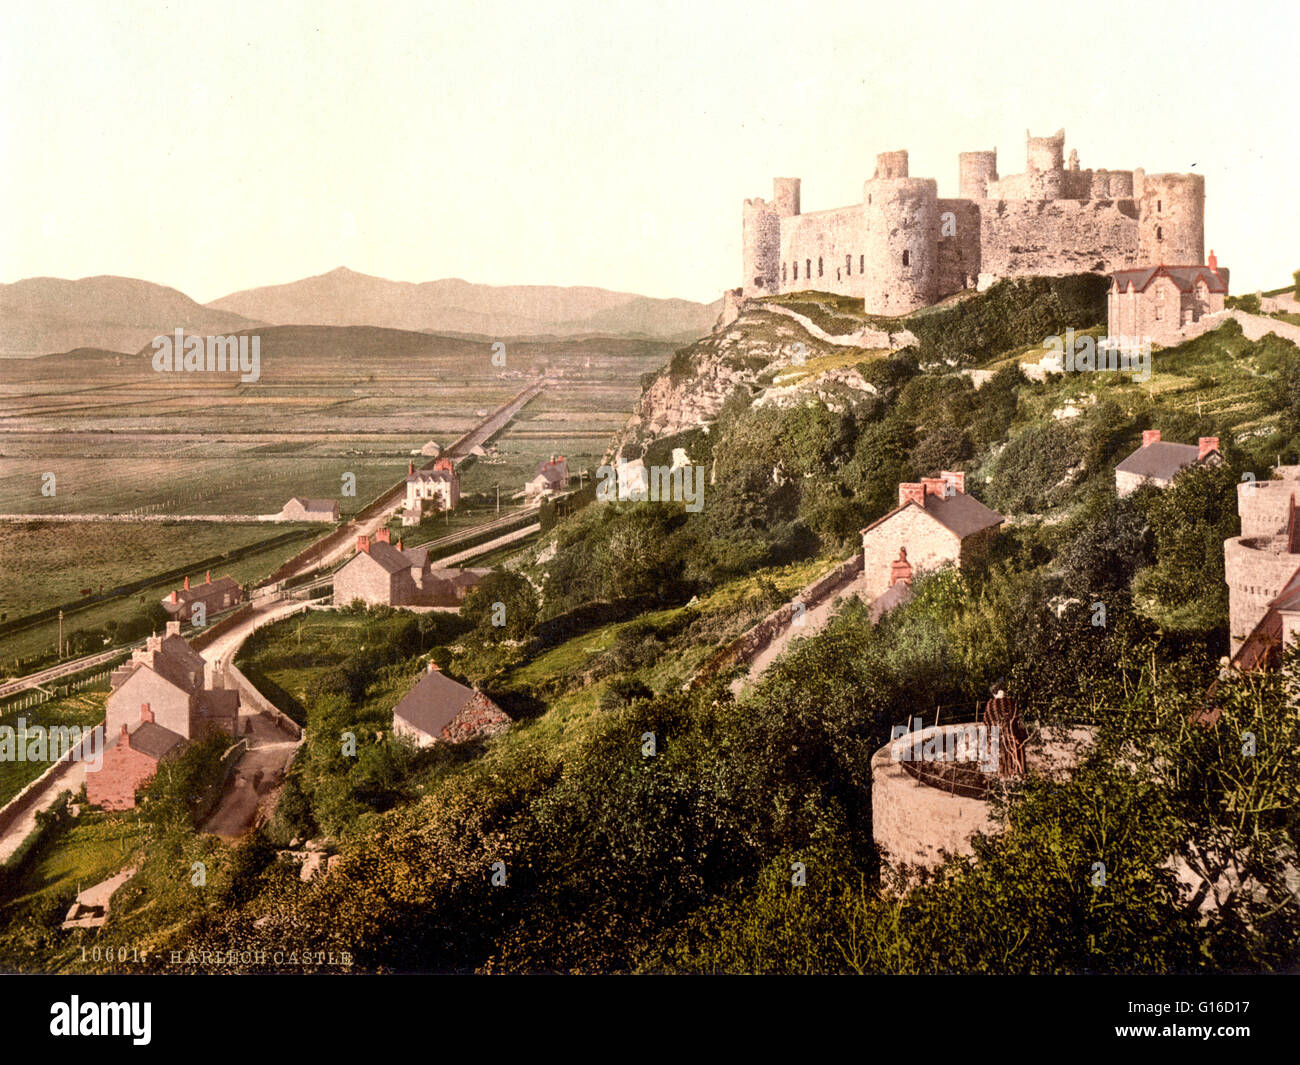 Harlech Castle, situé dans la région de Harlech, Gwynedd, Pays de Galles, est une fortification médiévale, construite au sommet d'un éperon rocheux à proximité de la mer d'Irlande. Il a été construit par Édouard I lors de son invasion du Pays de Galles entre 1282 et 1289. Au cours de la guerre des roses au Banque D'Images